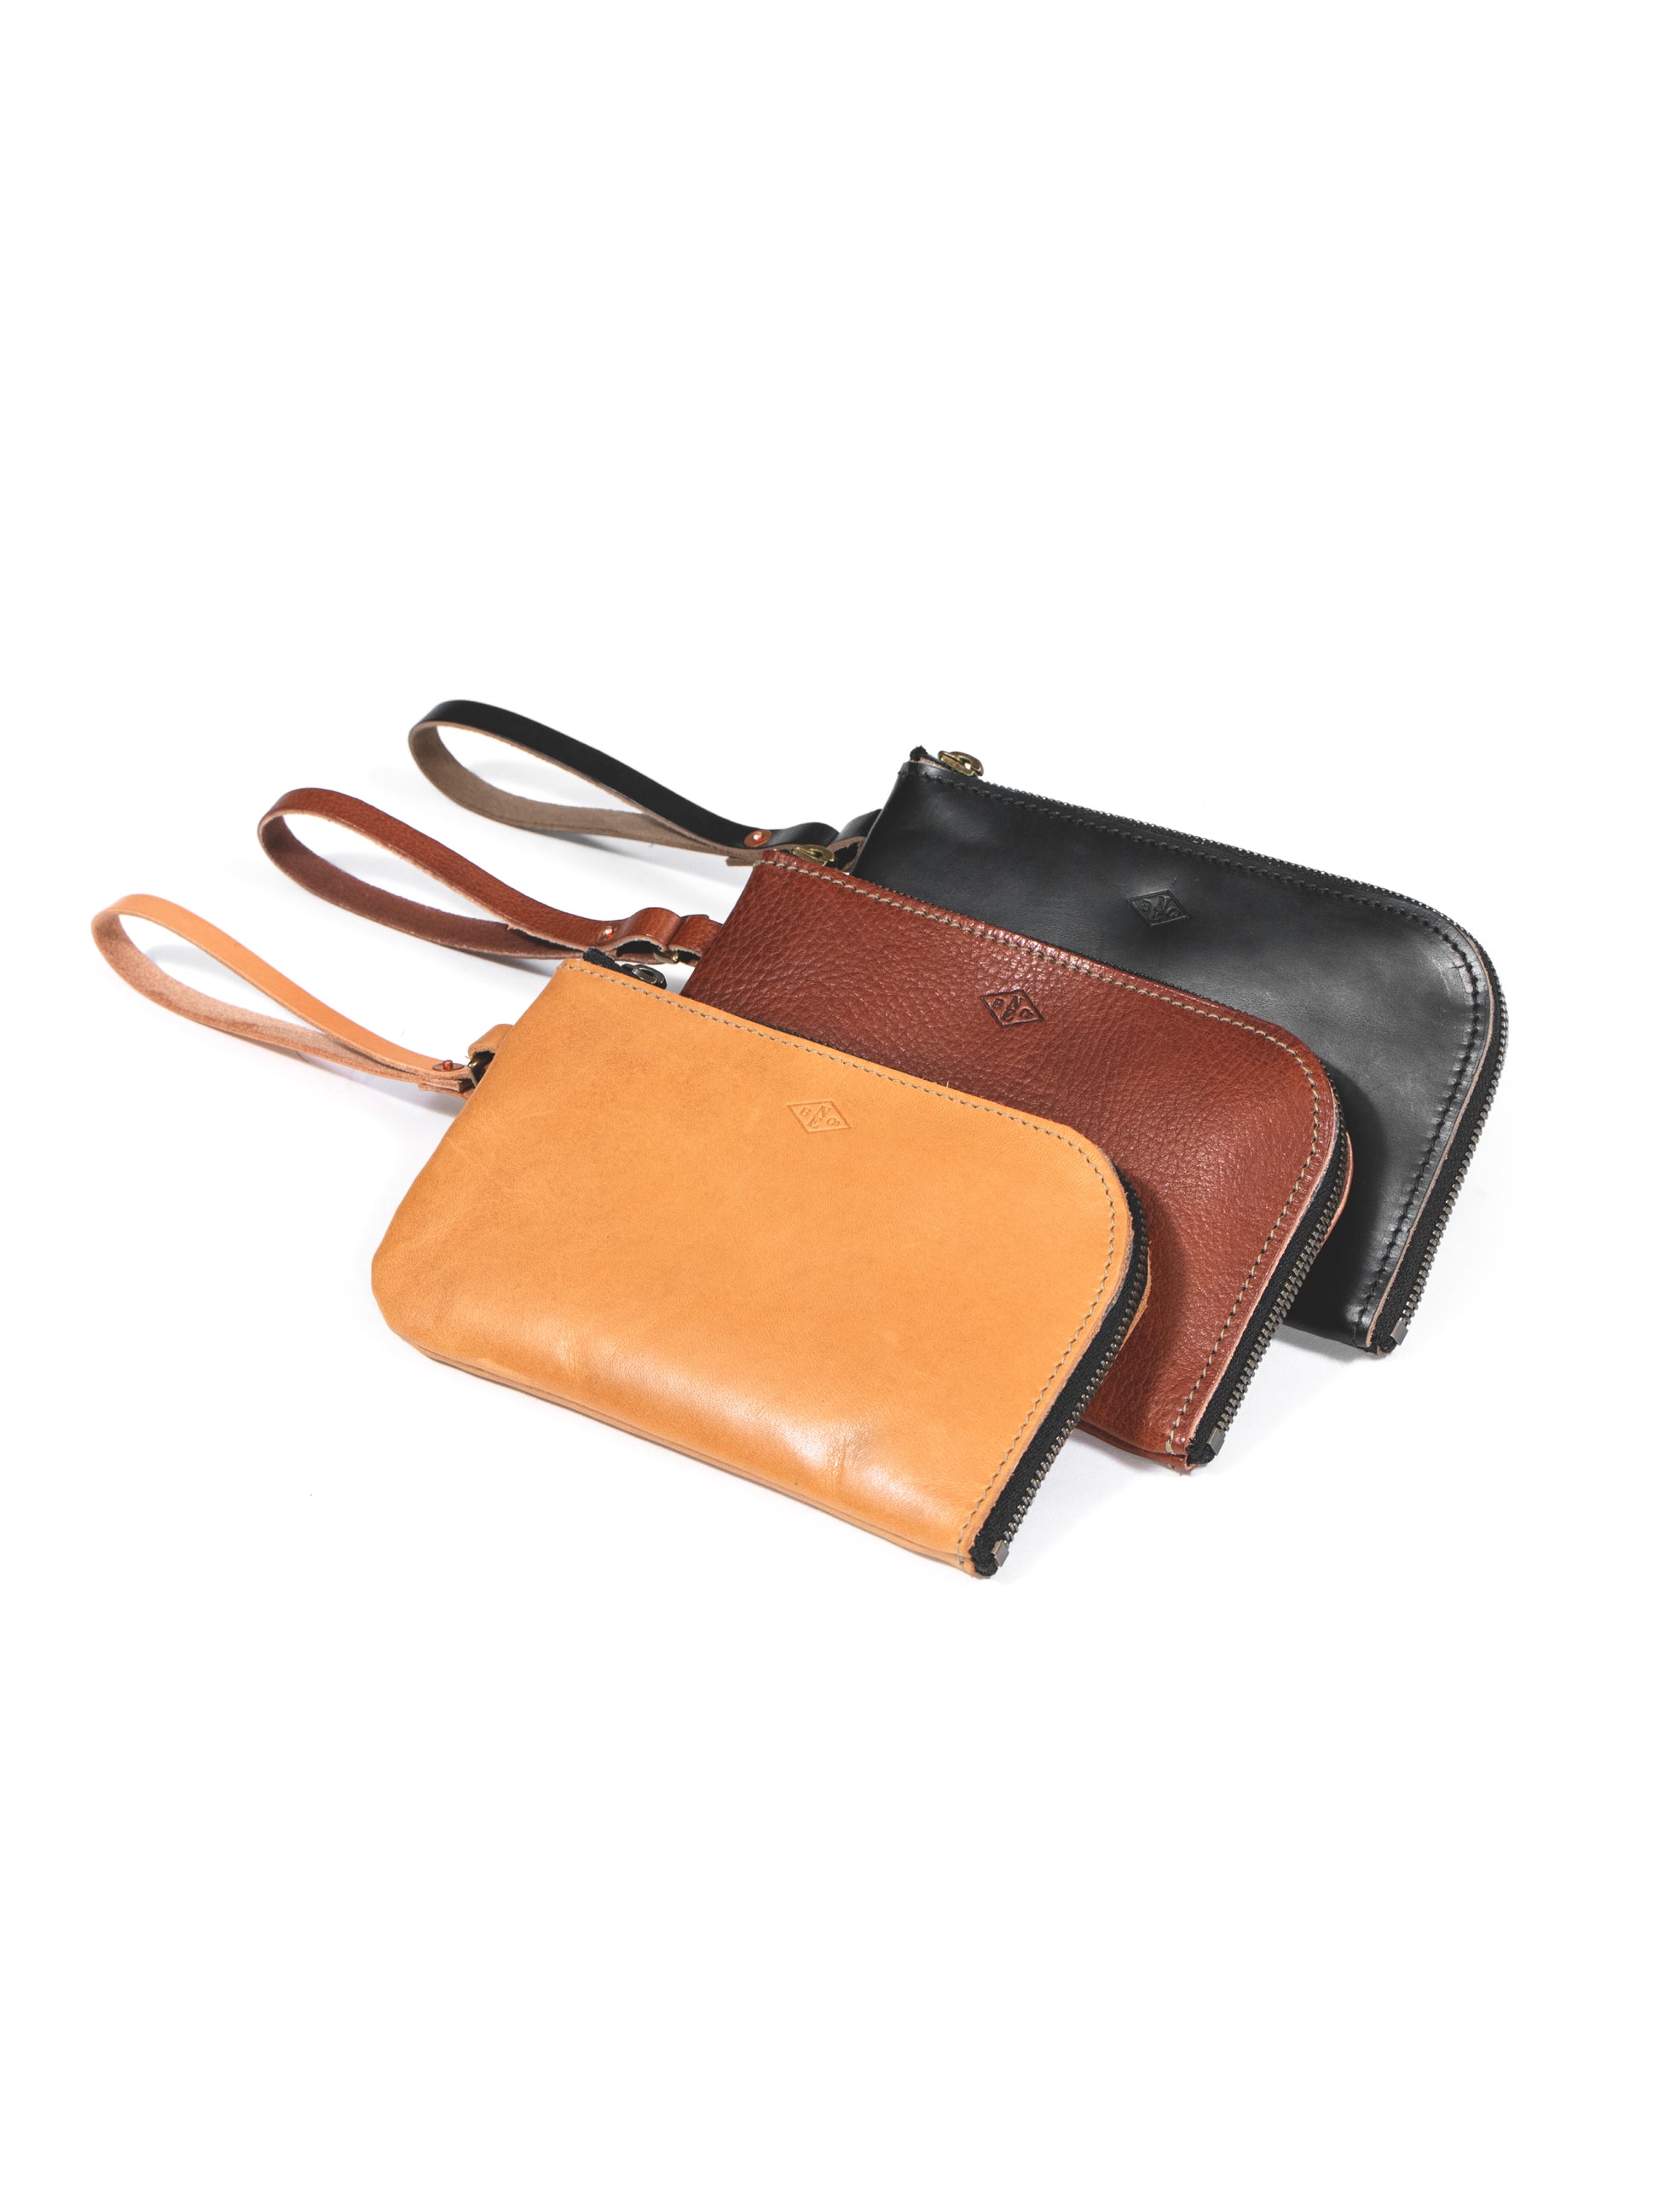 Leather Wallets & Wristlets